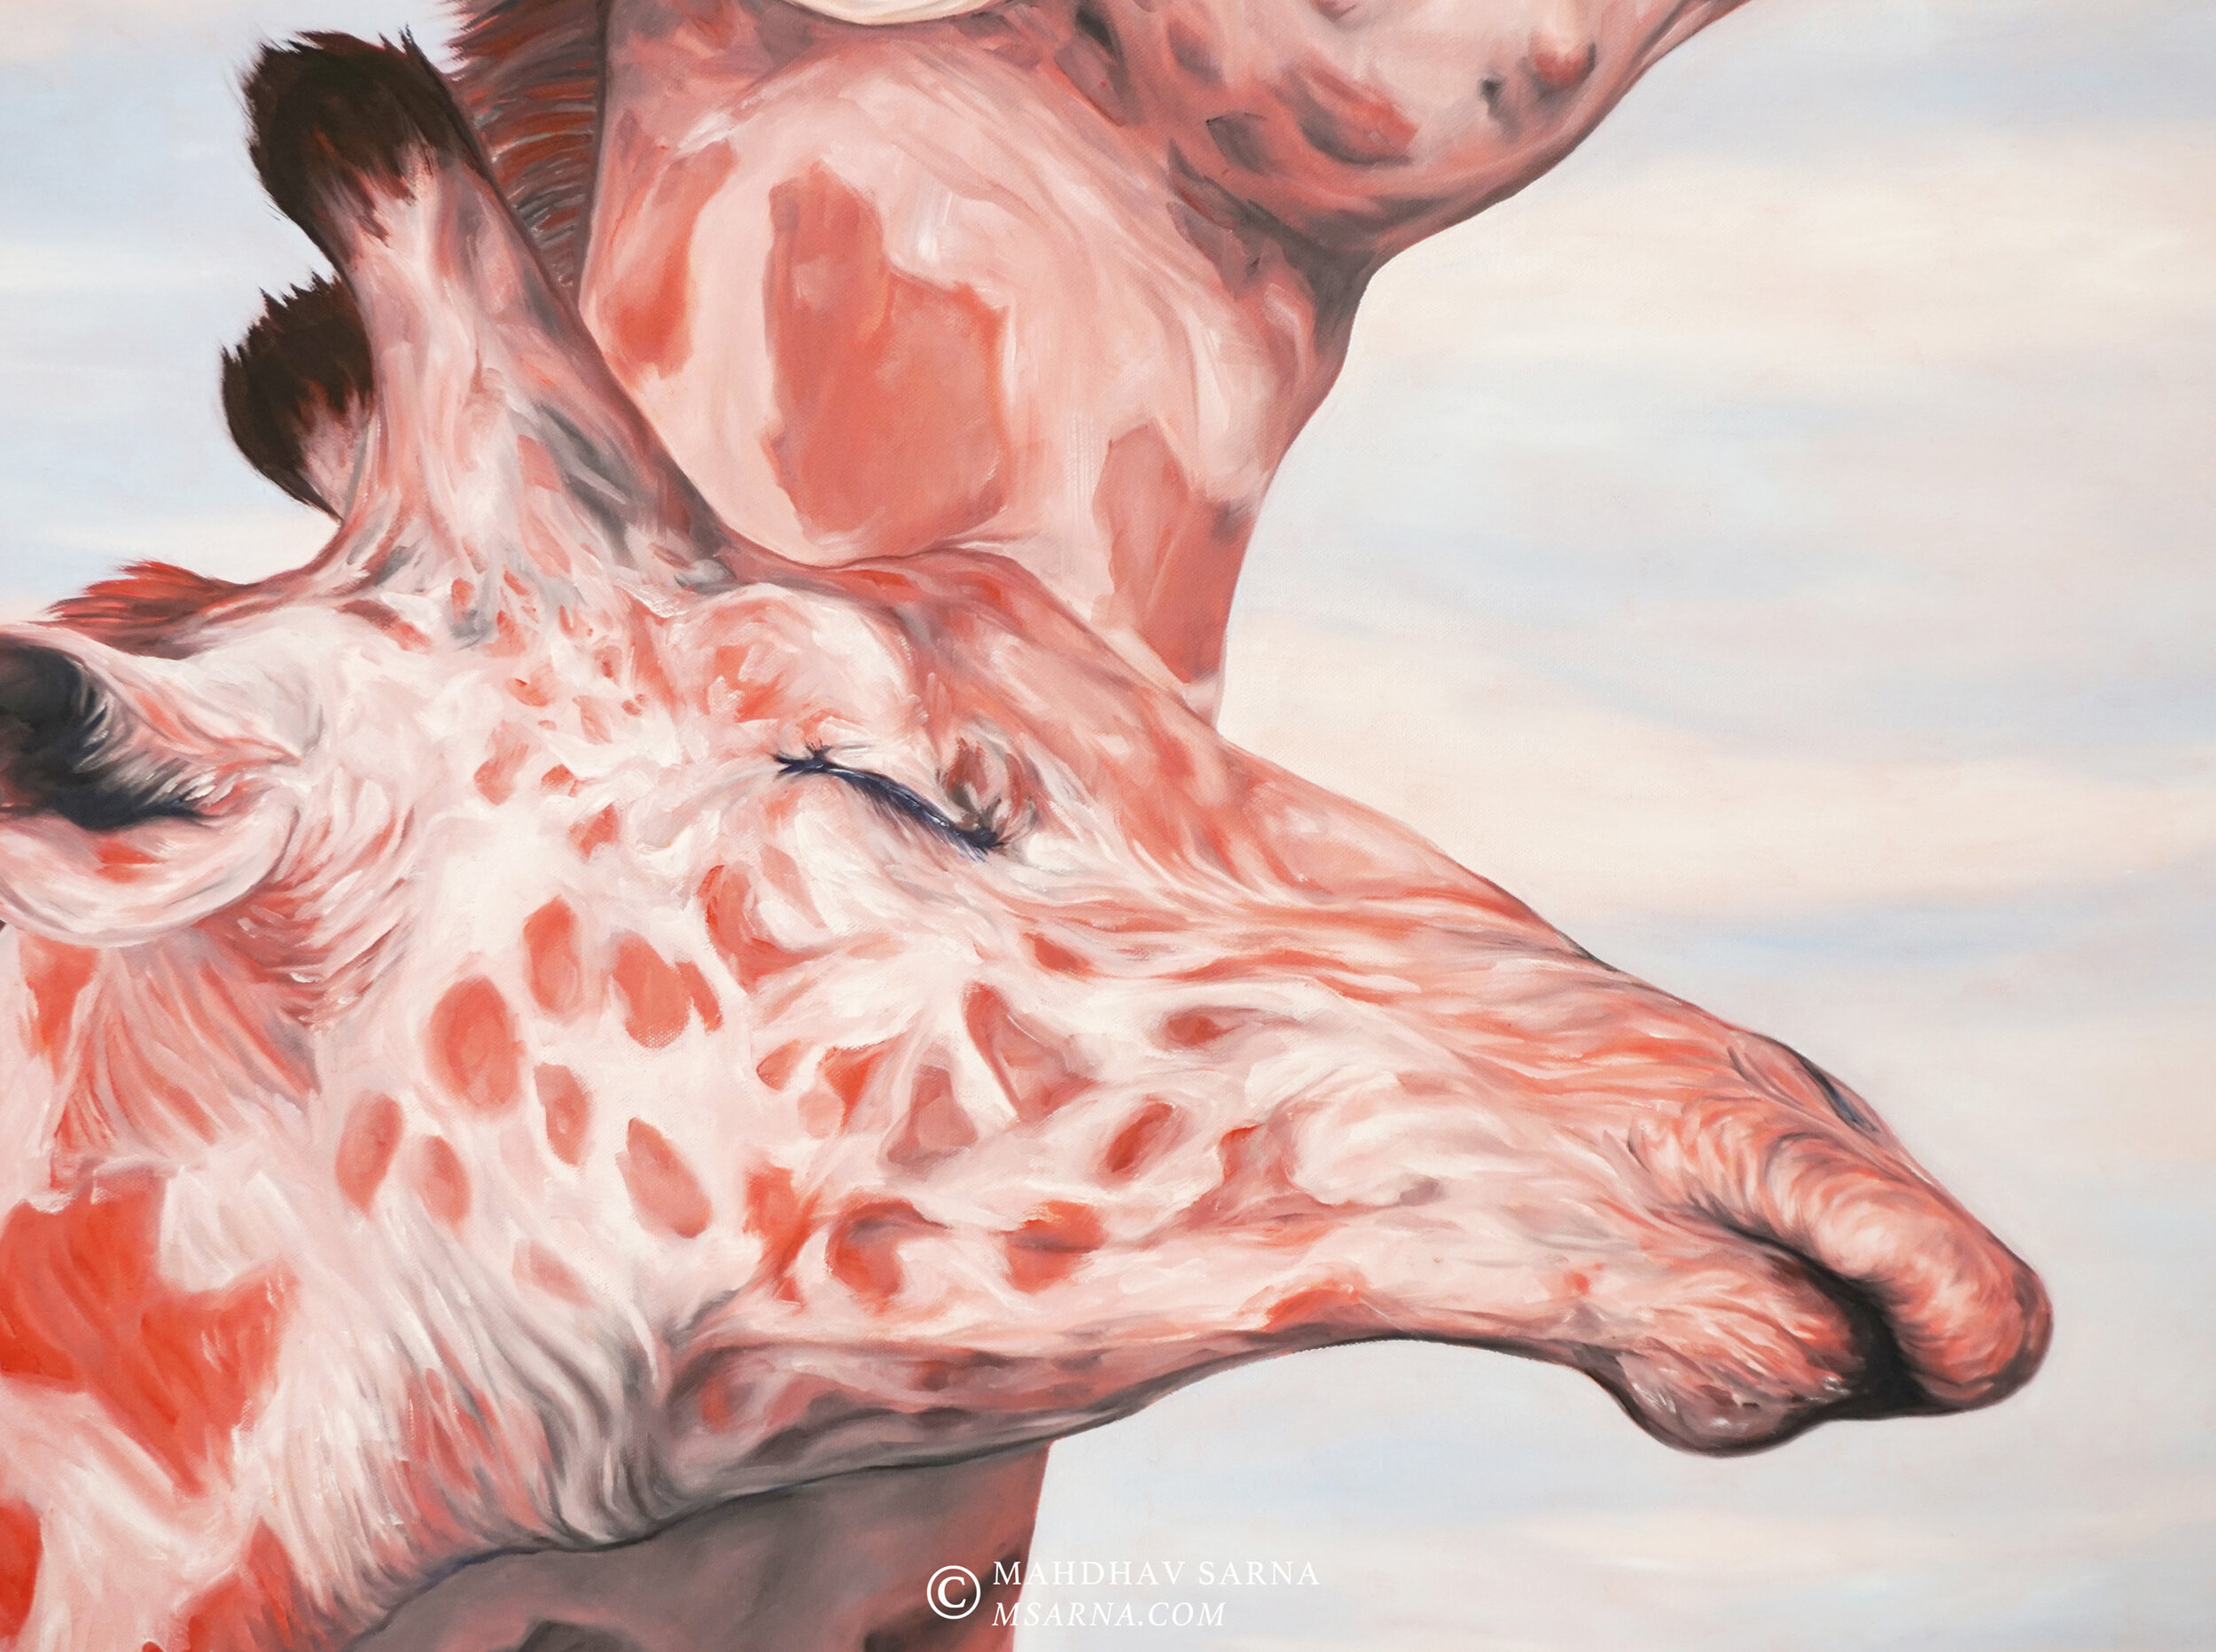 giraffe oil painting affn wildlife art mahdhav sarna 03.jpg